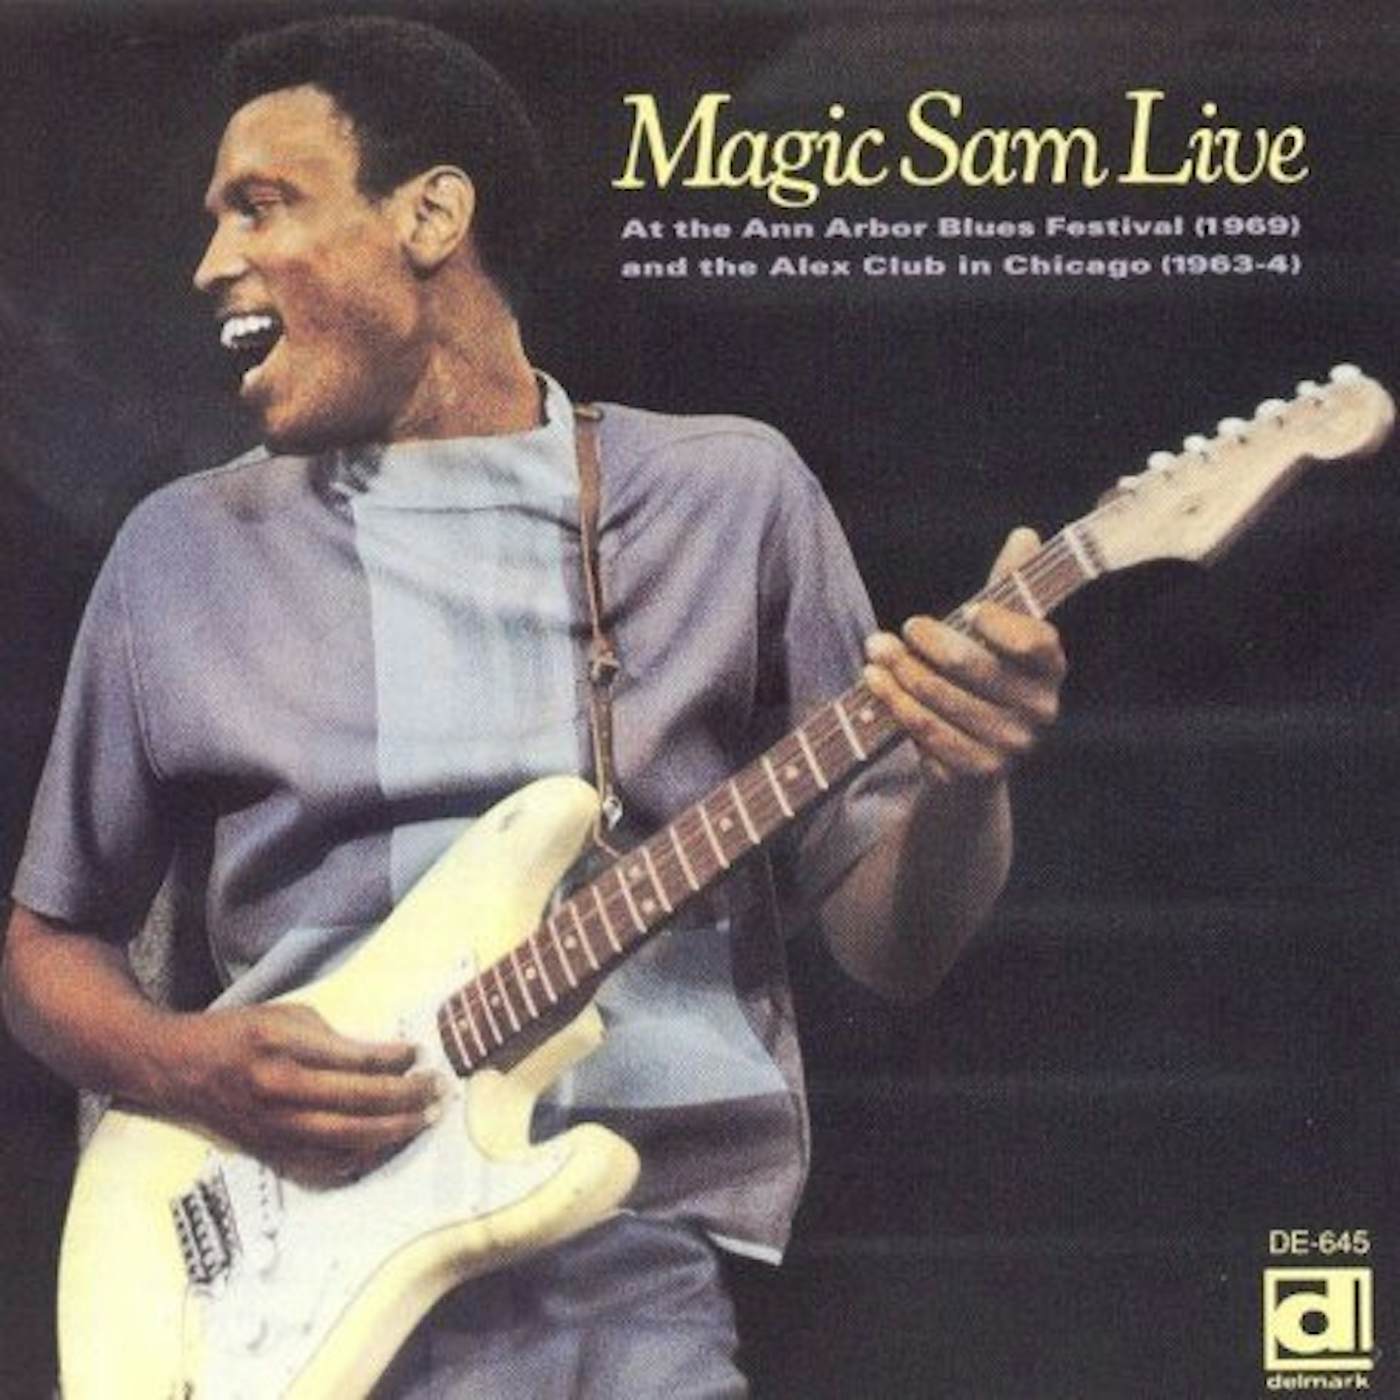 Magic Sam LIVE CD